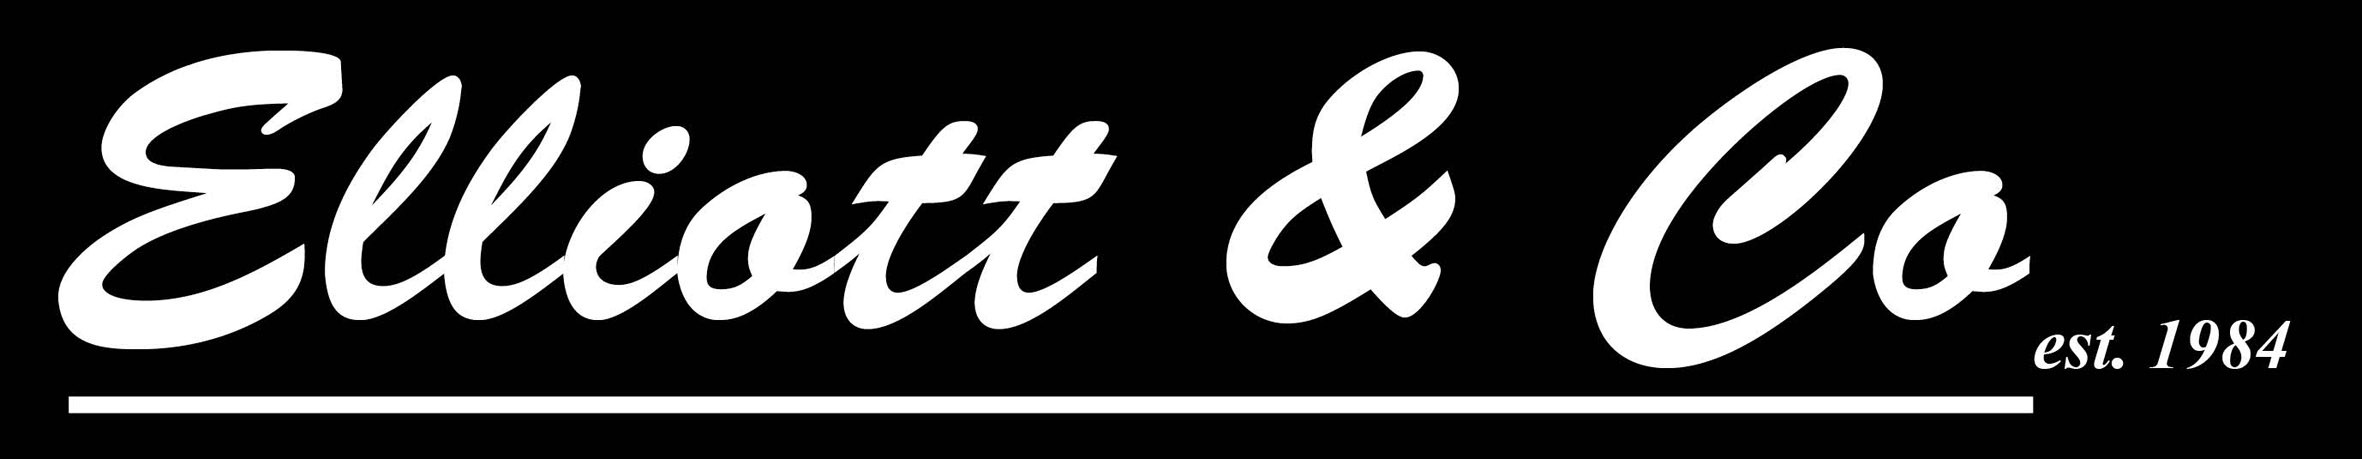 Logo of ELLIOTT & CO